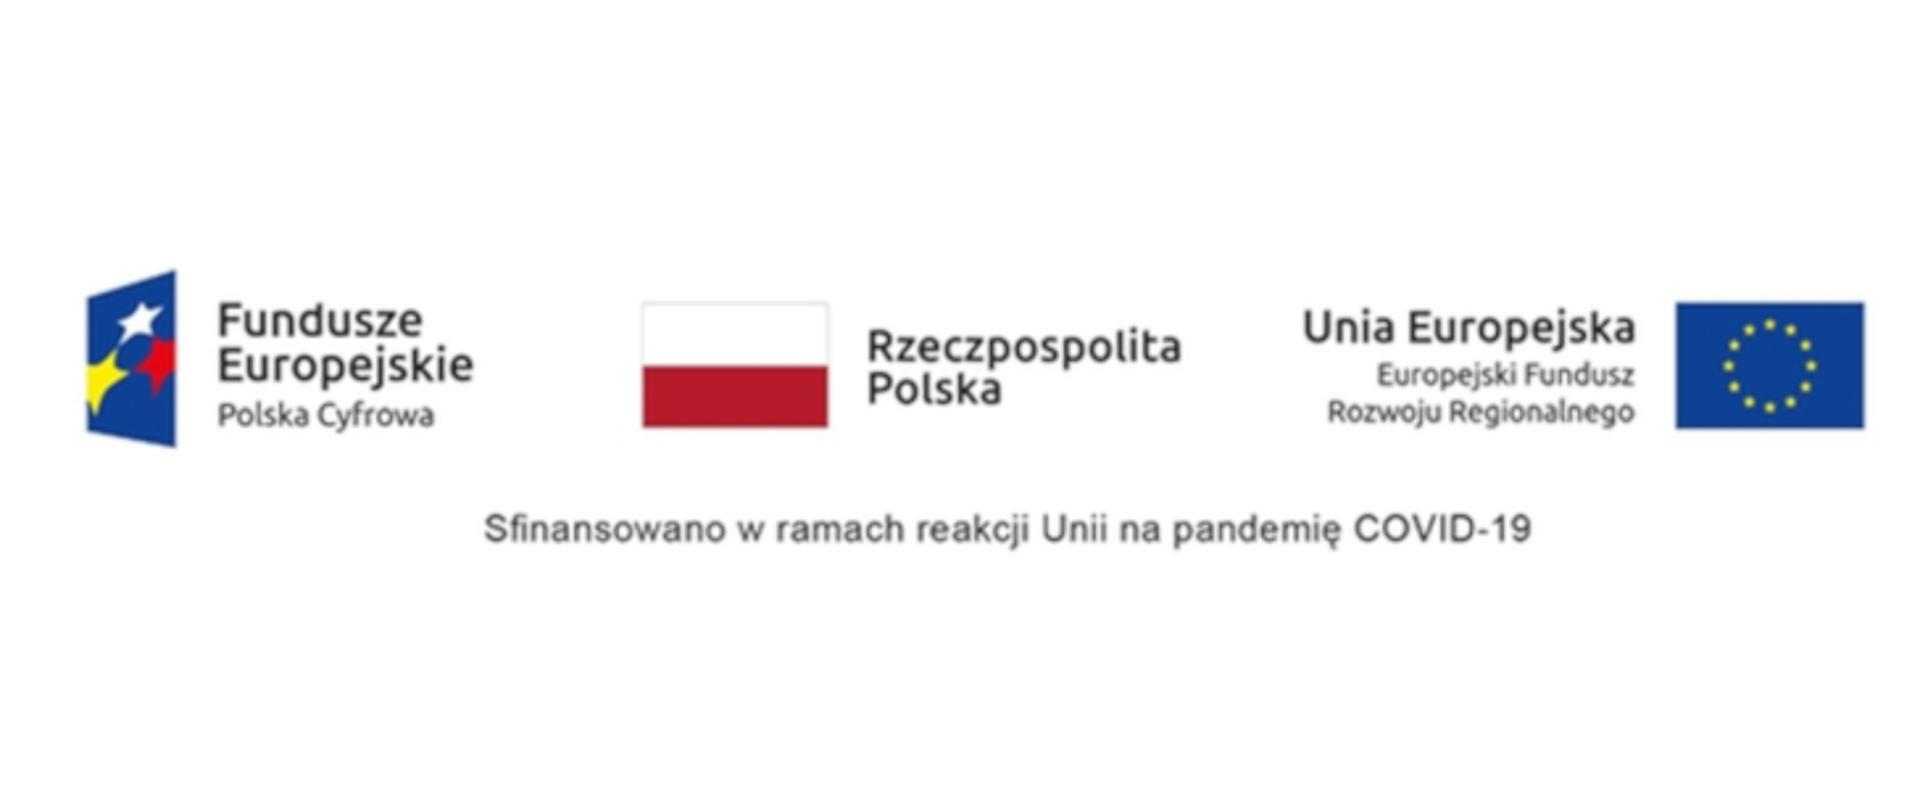 Loga: Fundusze Europejski, Rzeczpospolita Polska, Unia Europejska